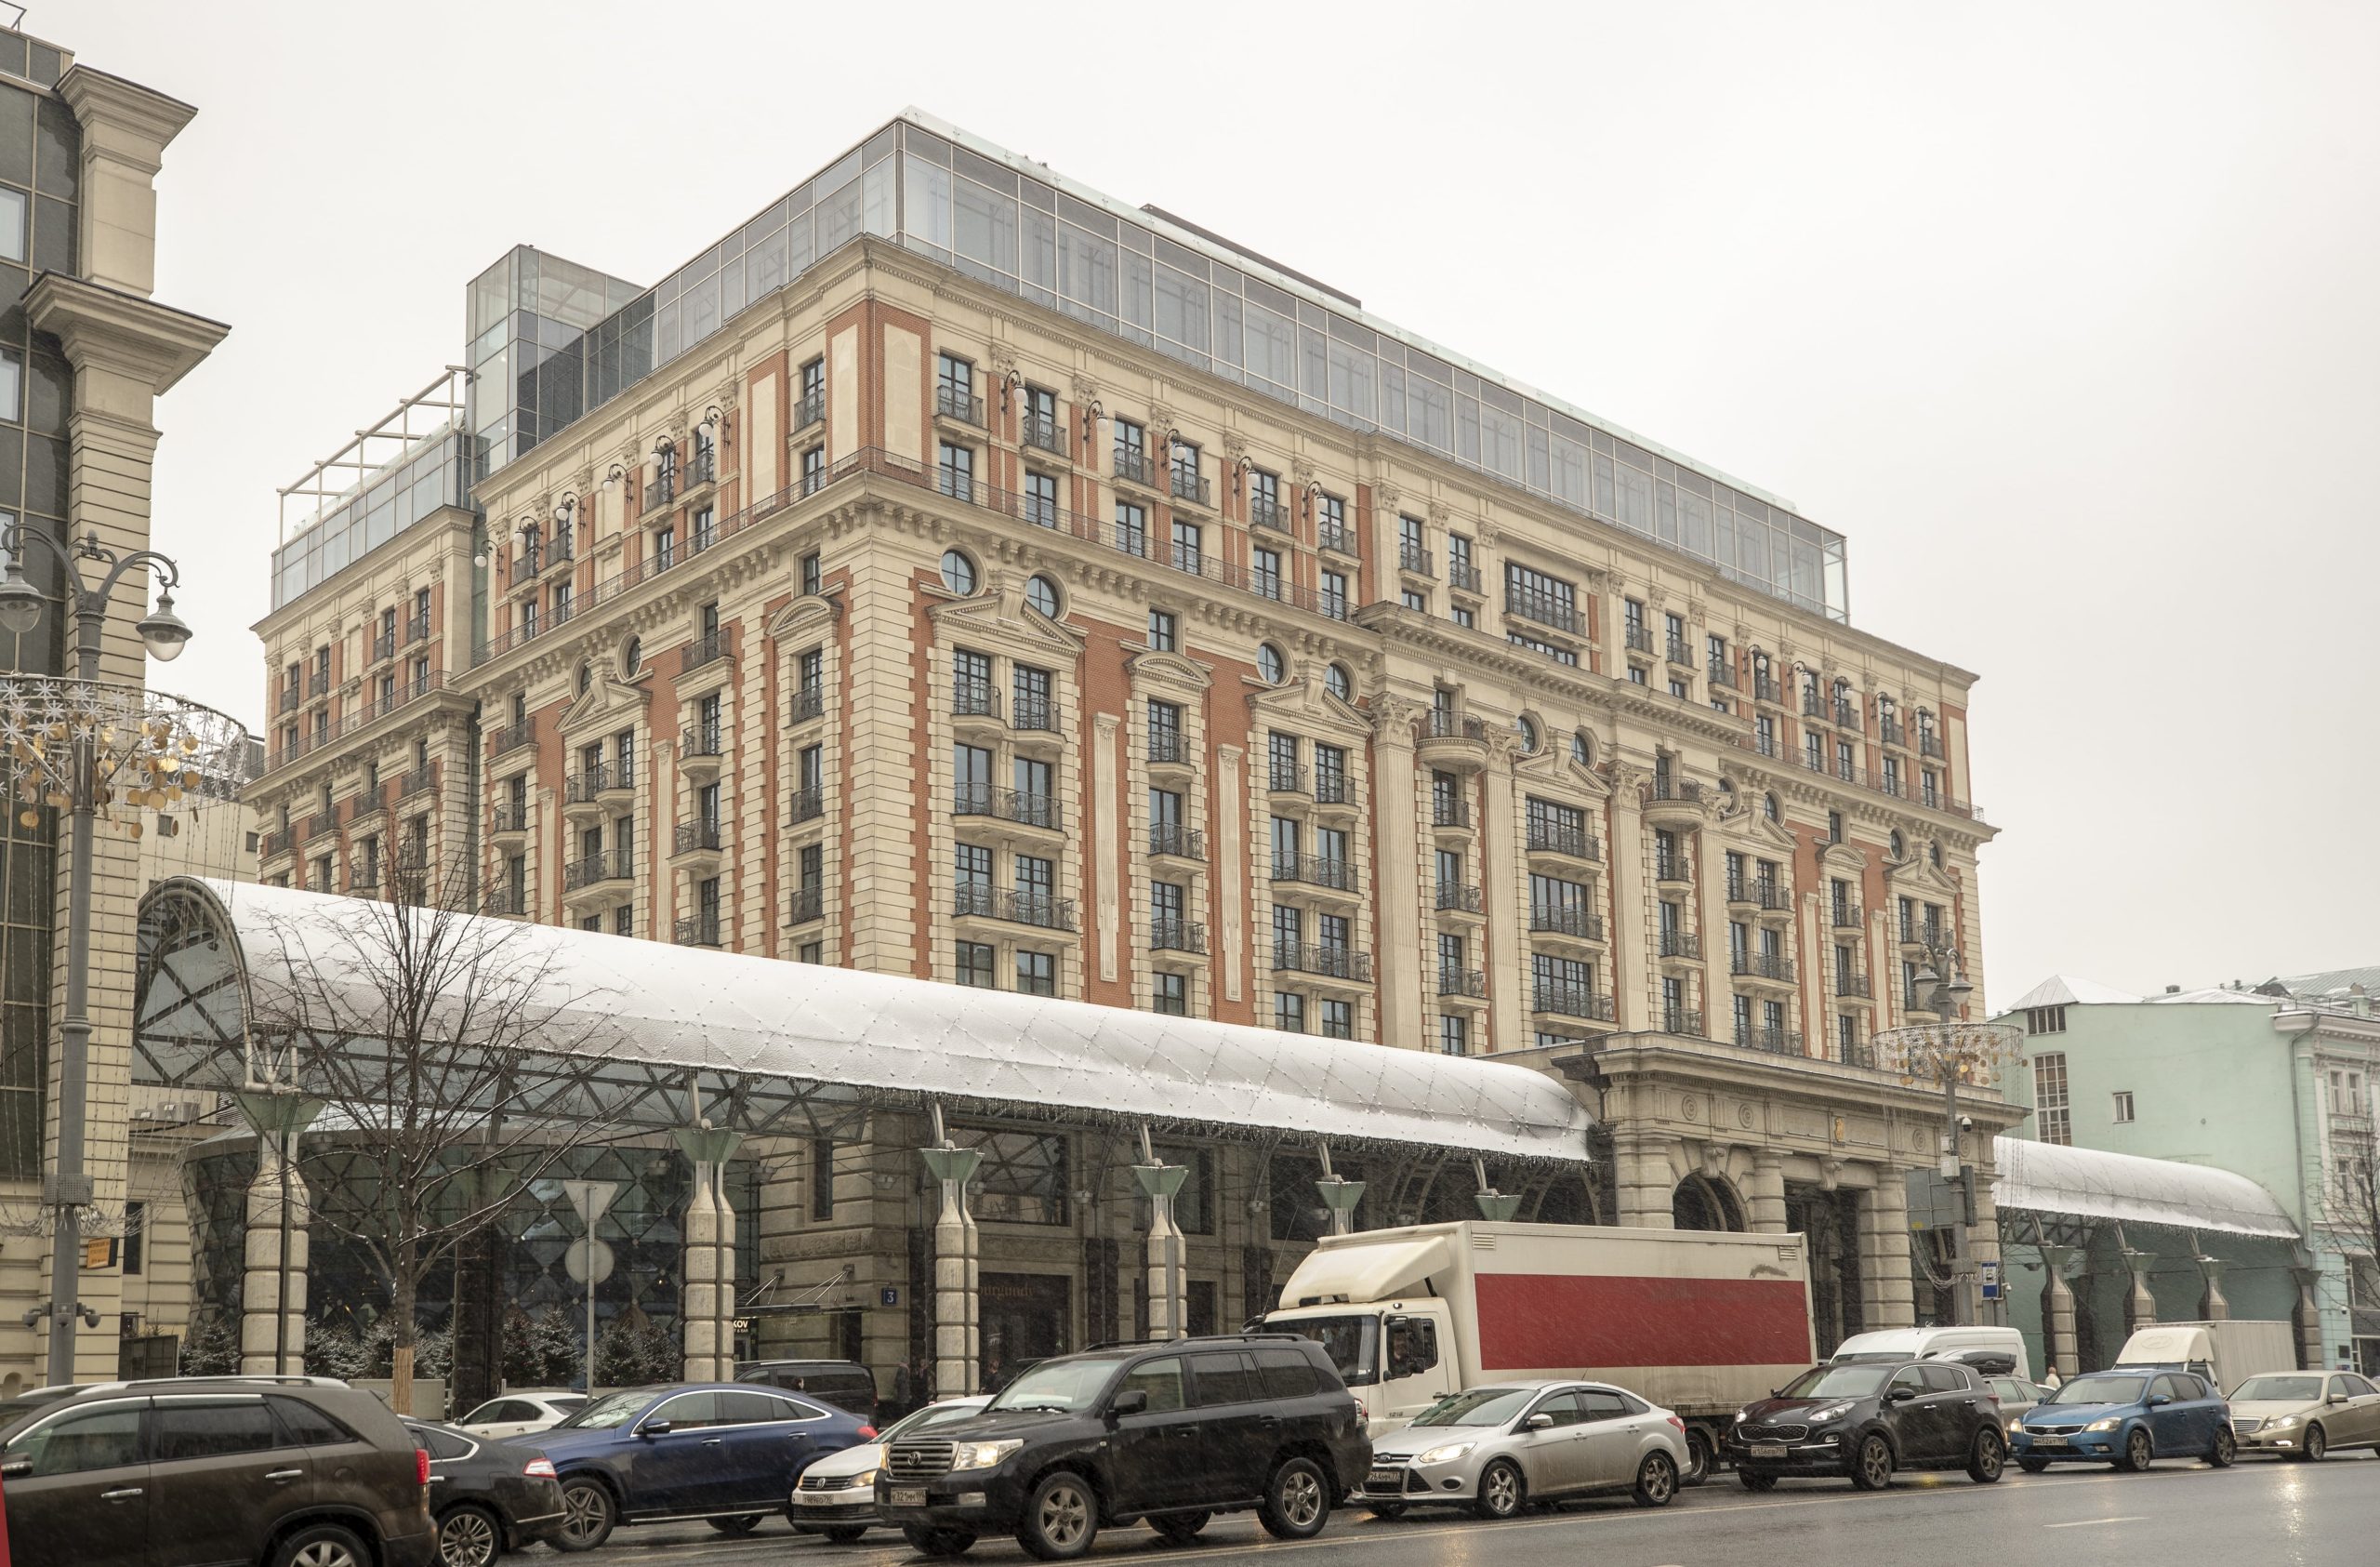 The Ritz Carlton Moscow